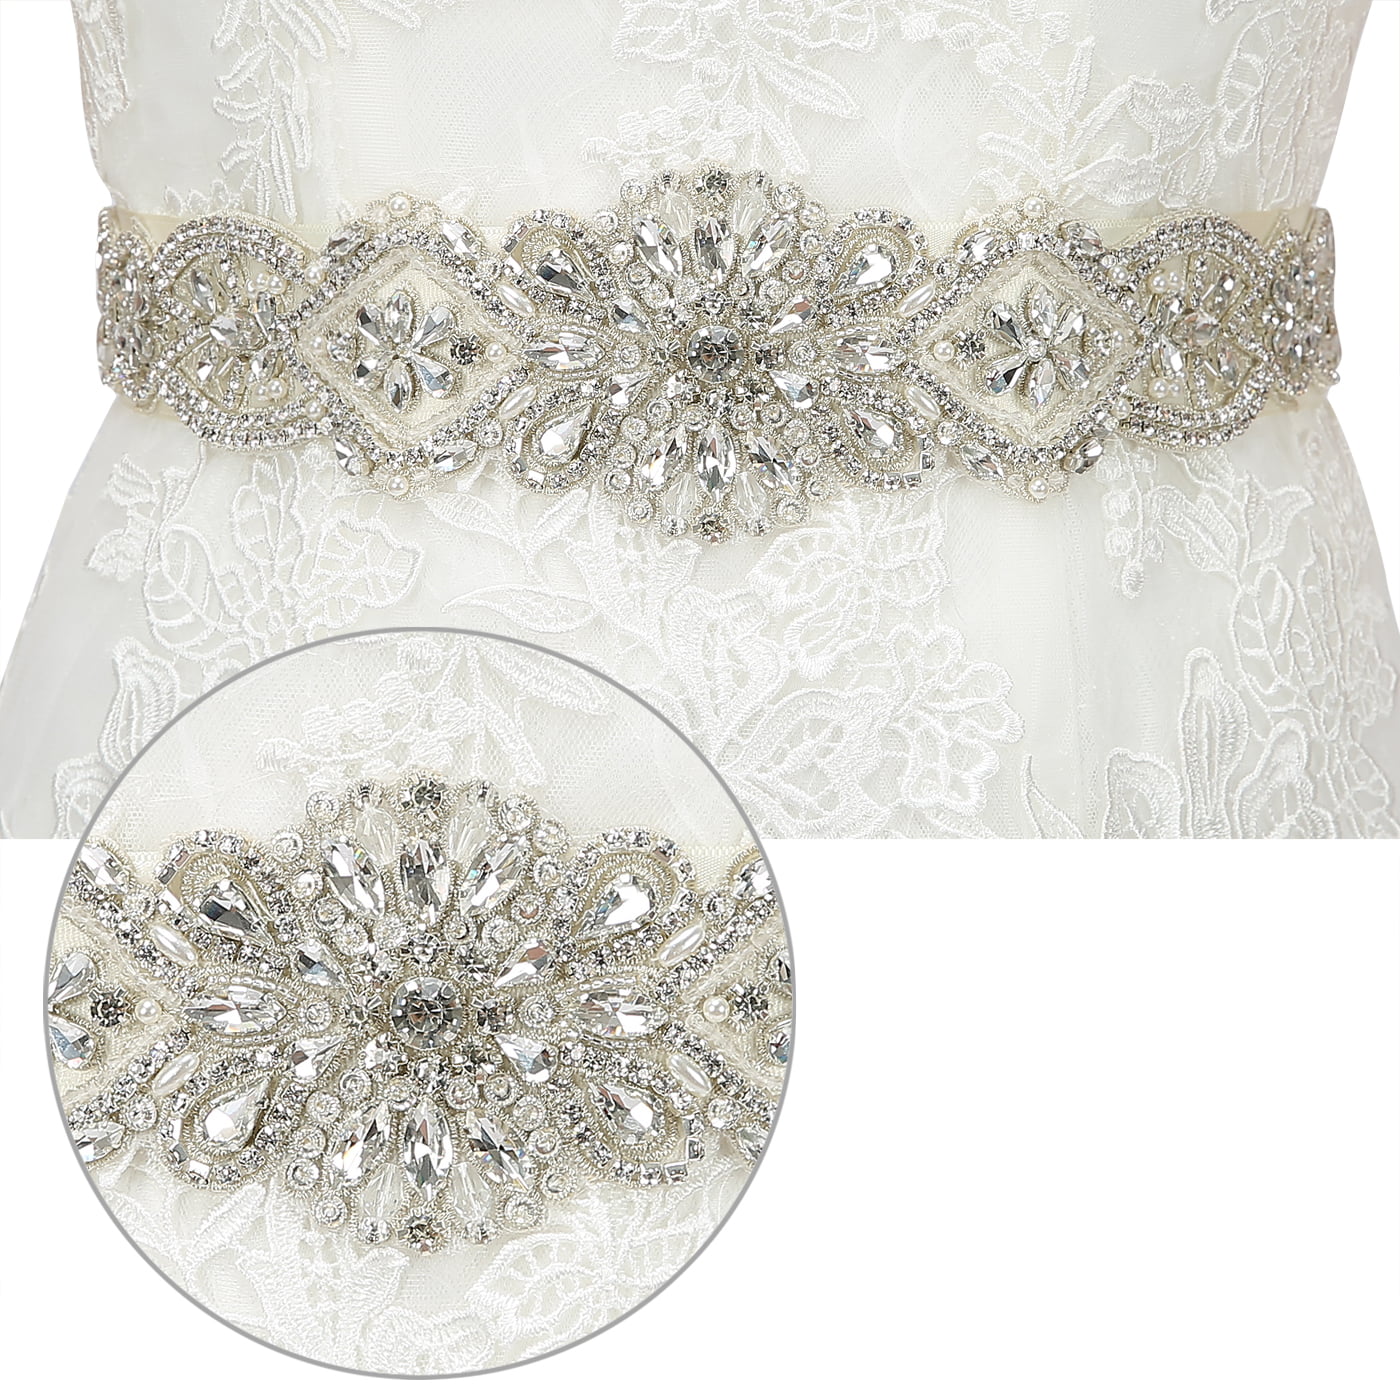 1/2/3 CRYSTAL RHINESTONE Waistband Girdle Belt Wedding Gown Prom Bridal  Dress $31.24 - PicClick AU